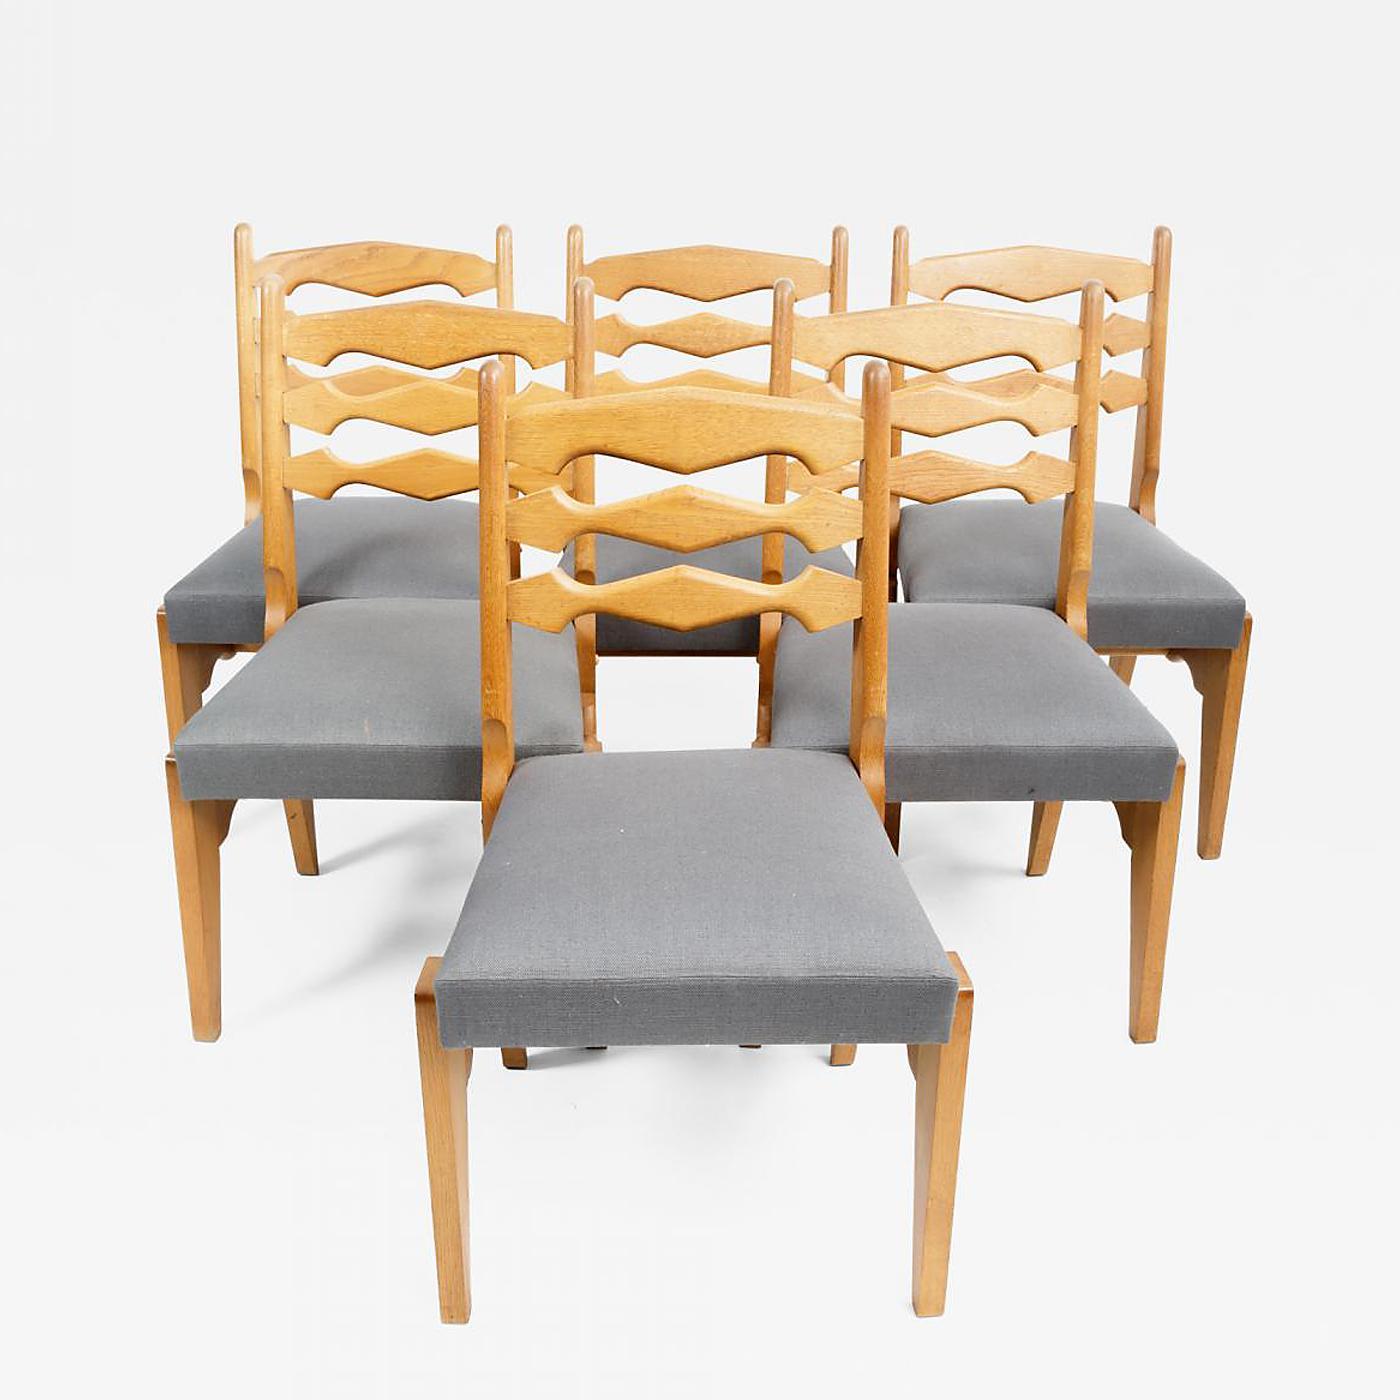 Ensemble de six chaises de salle à manger en chêne et tapisserie par Guillerme et Chambron, France, vers les années 1970.

Le design incroyable se compose d'une construction en chêne massif. Piétements et dossiers sculpturaux avec pieds angulaires